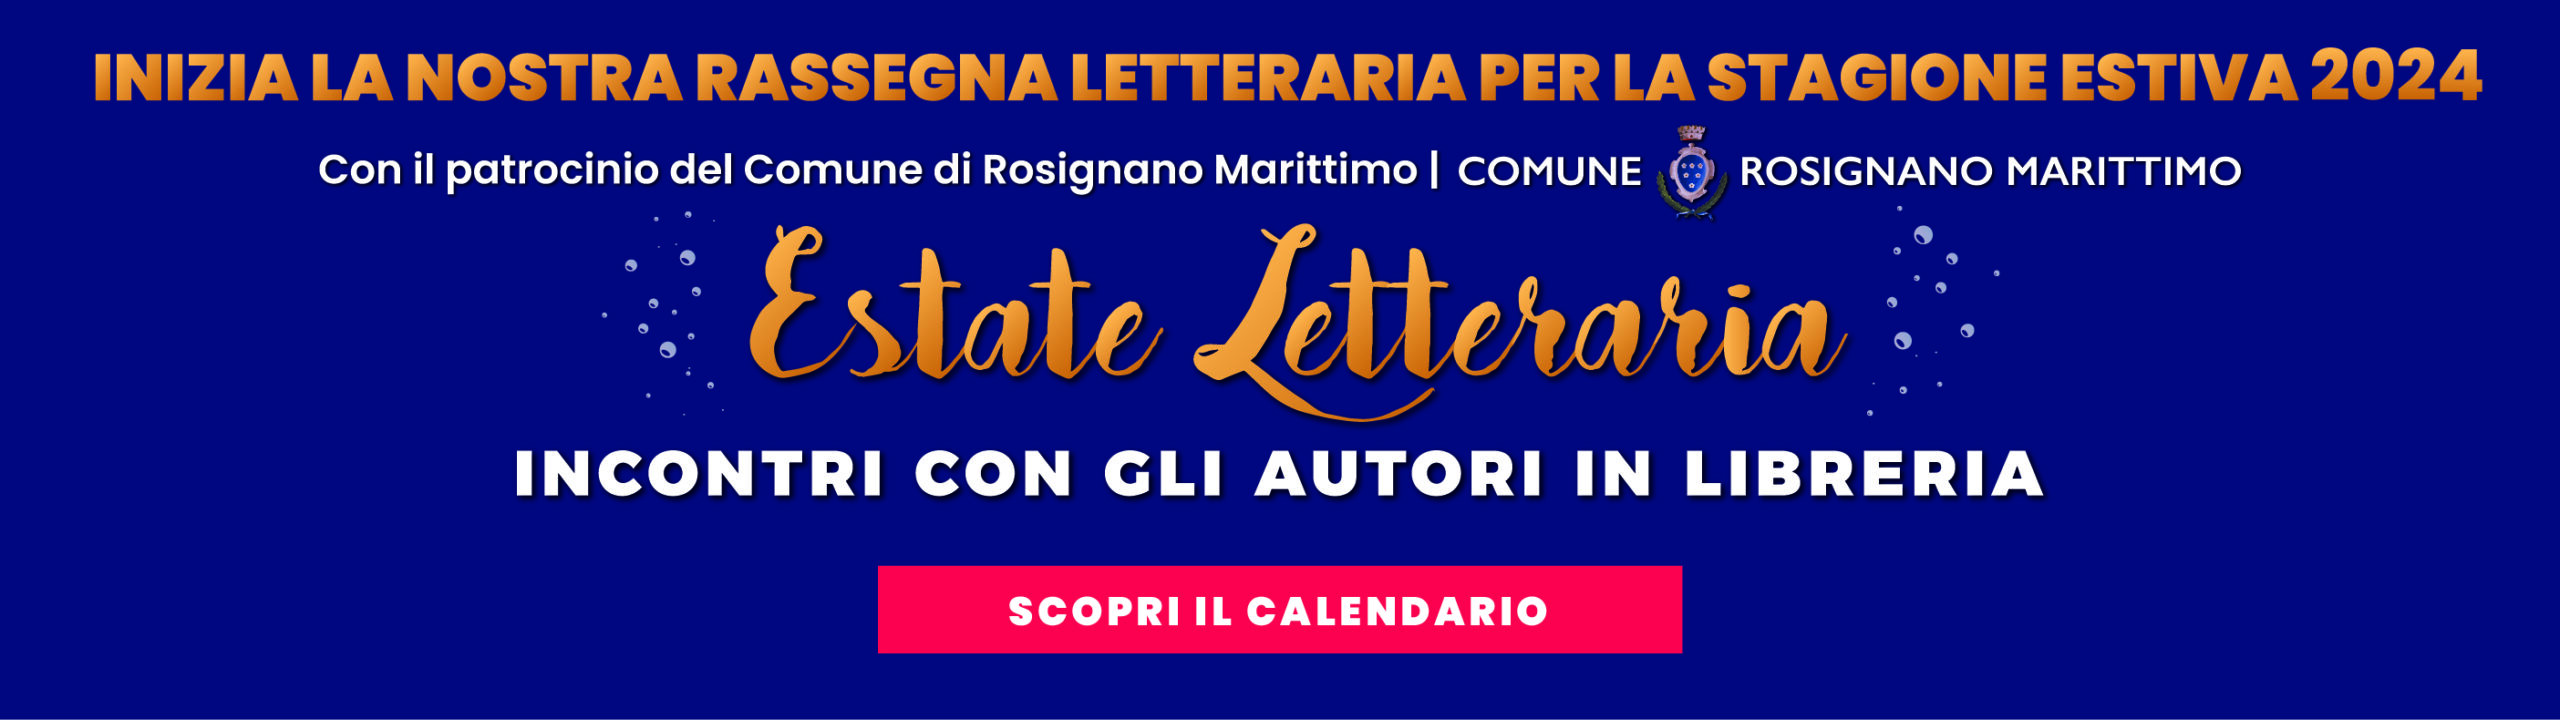 Estate Letteraria 2024 - Libreria Regaleco Castiglioncello